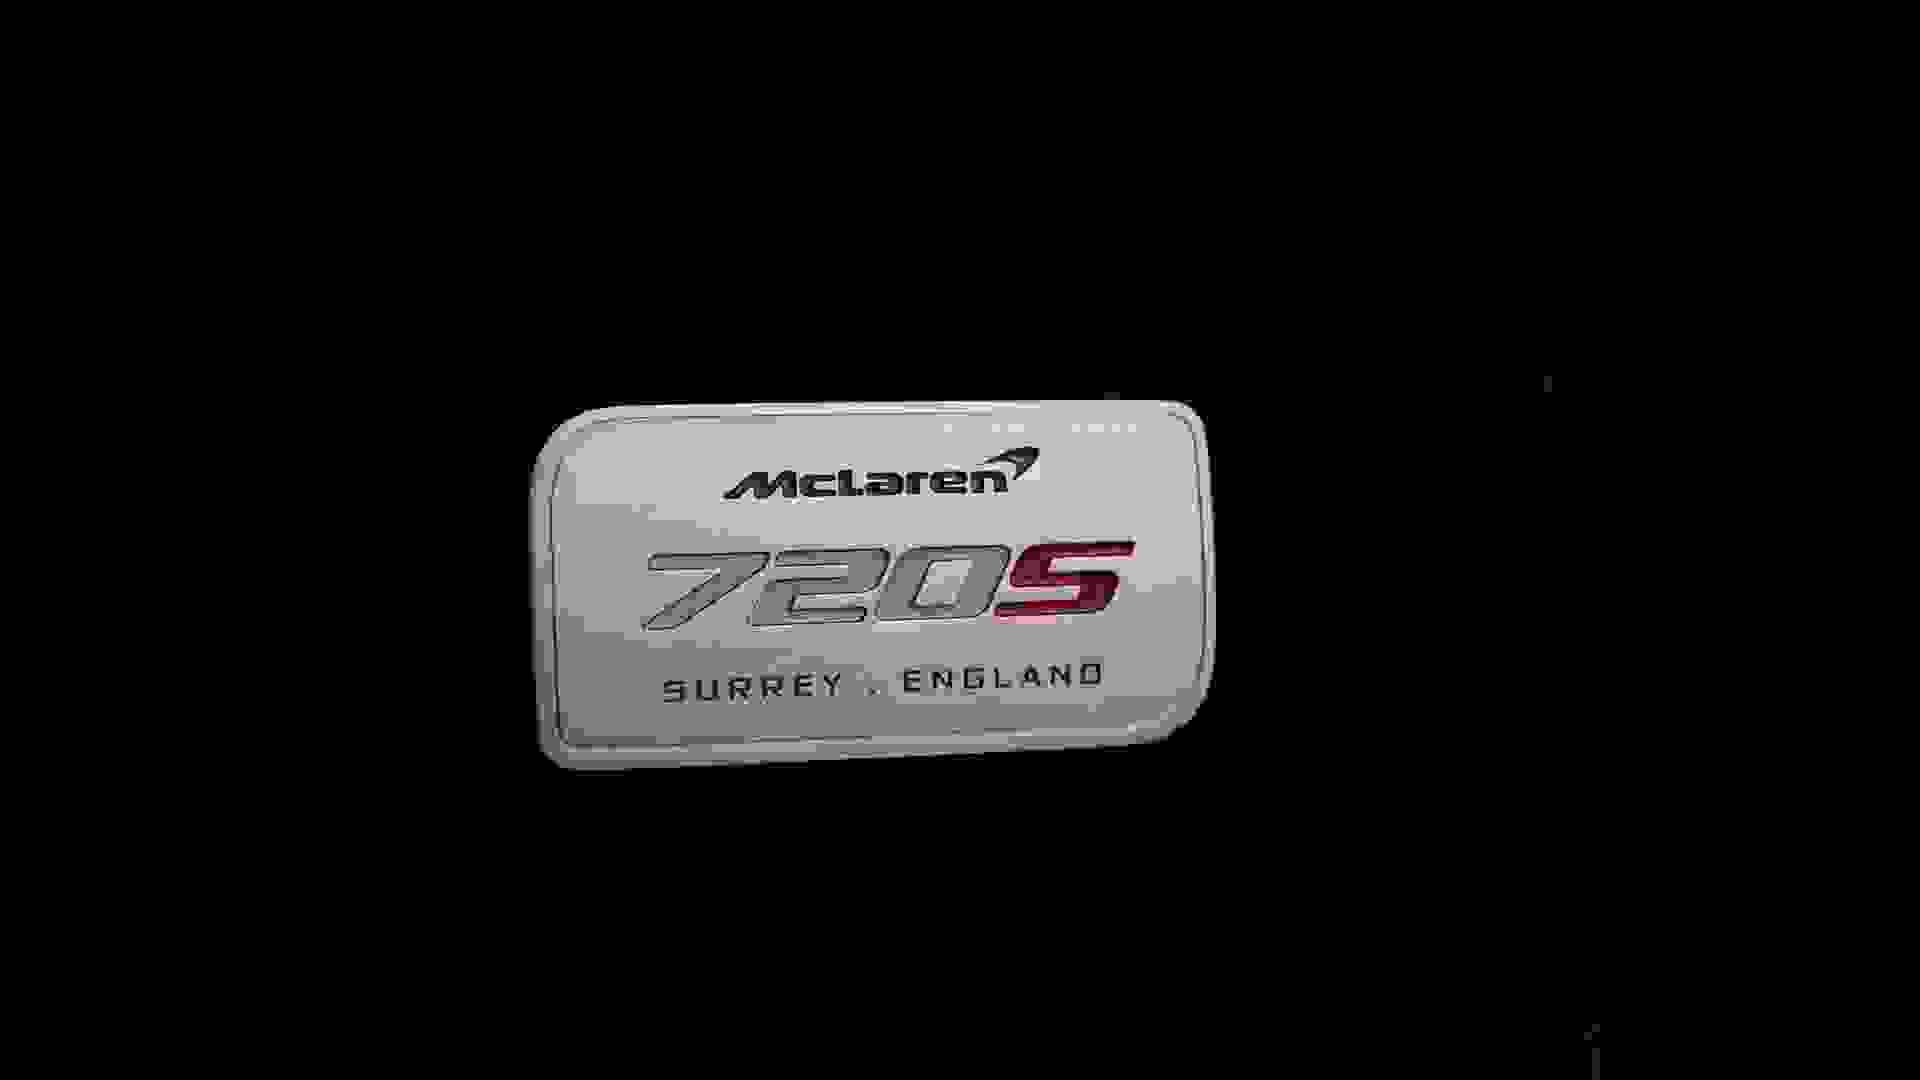 McLaren 720S Photo b3c5eb38-e3ef-4e25-985c-b2d045f681af.jpg